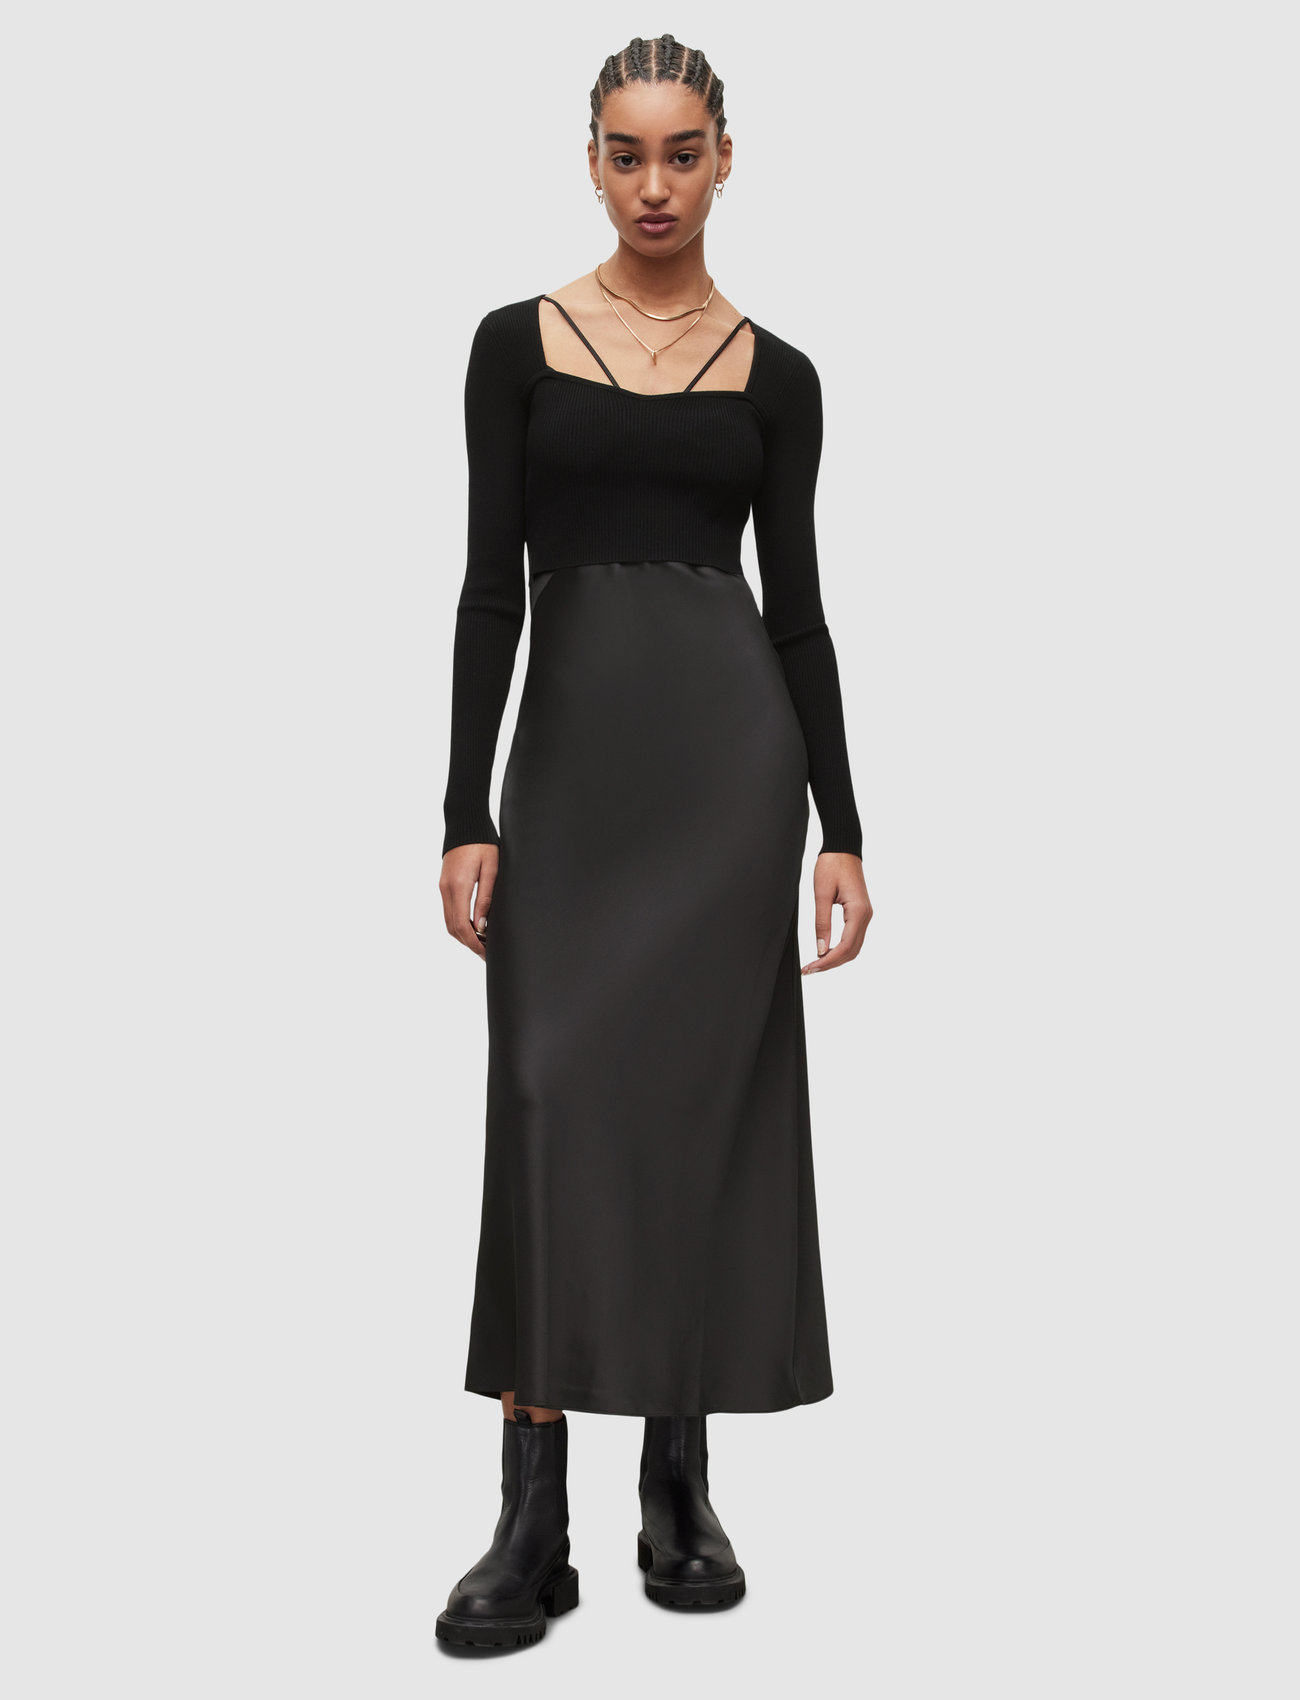 AllSaints - SASSI DRESS - party dresses - black - 0